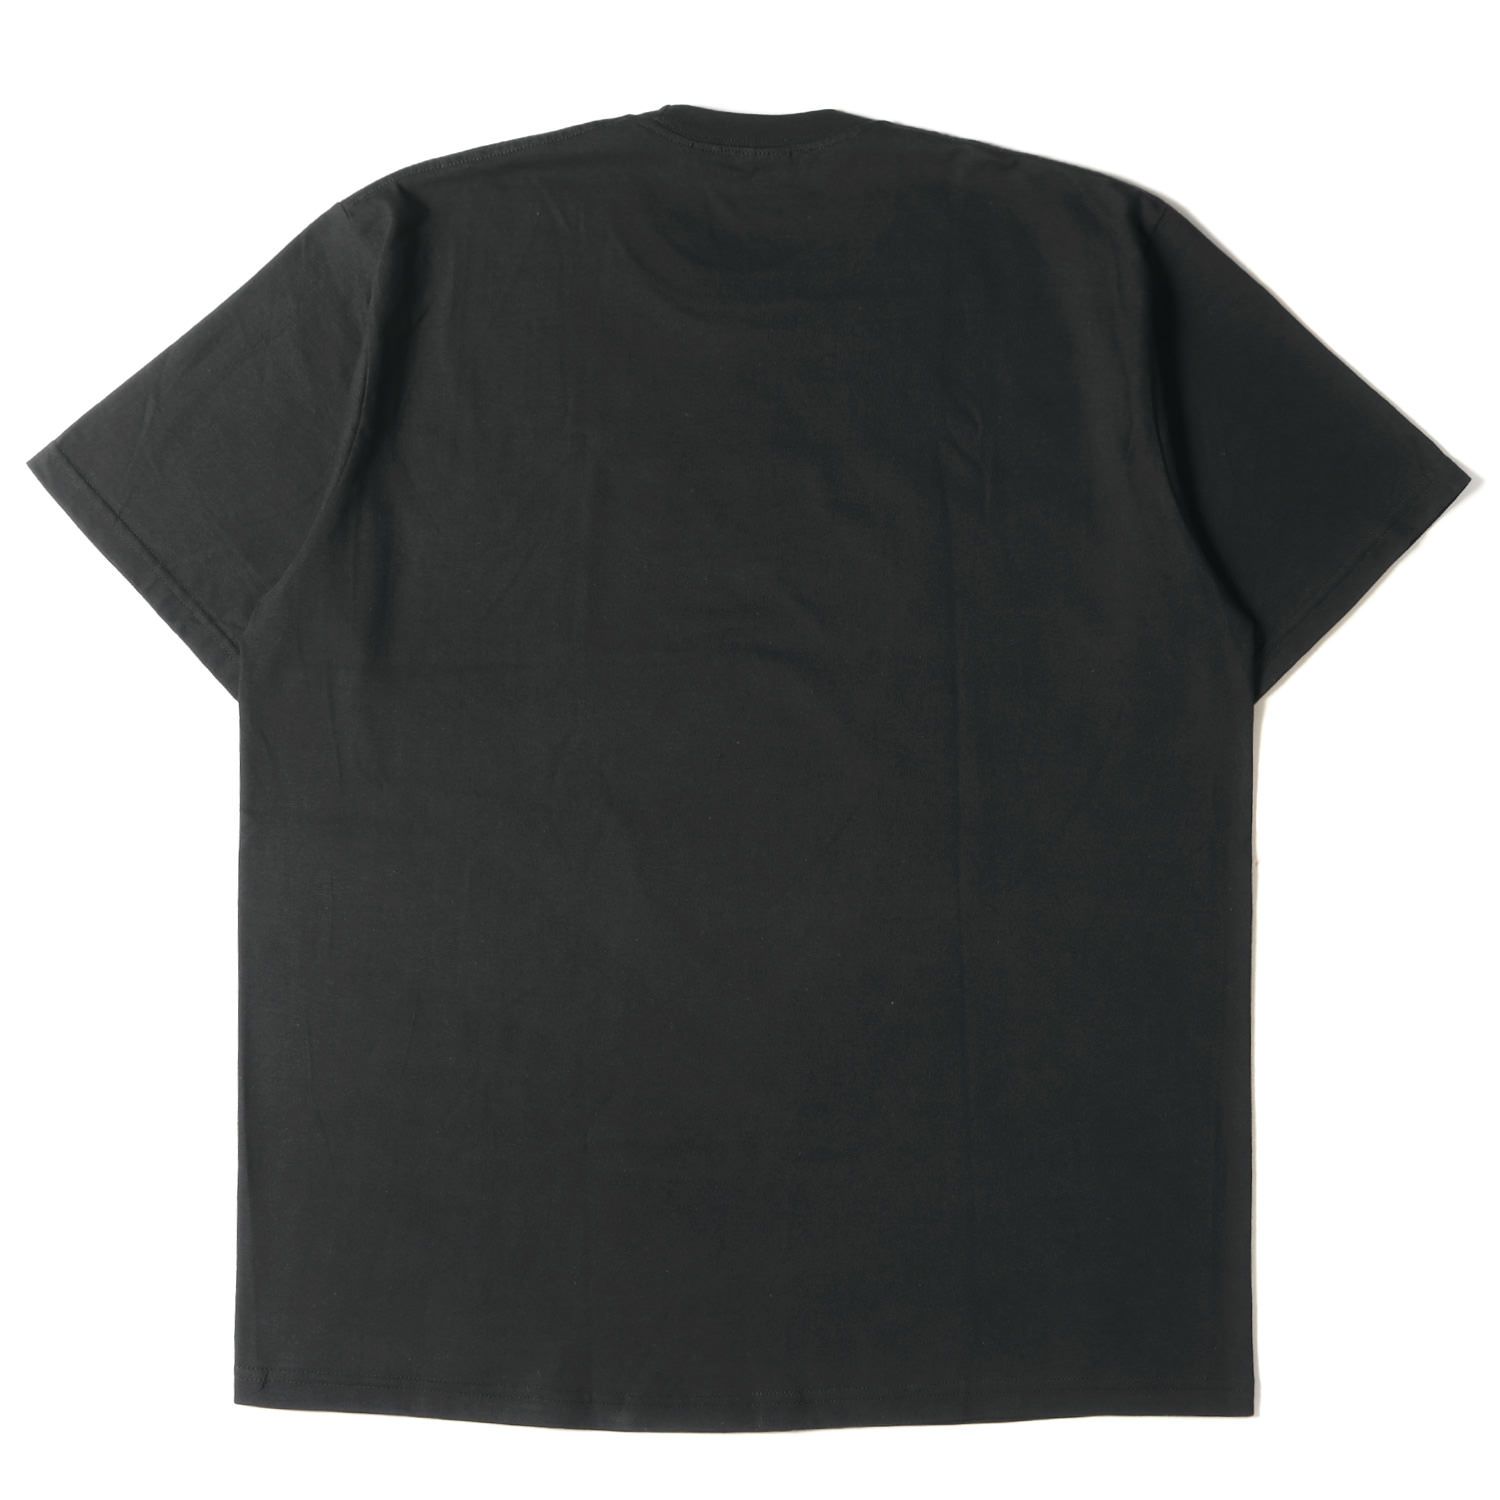 お買い得の通販 Supreme シュプリーム Tシャツ サイズ:XL 22AW John 